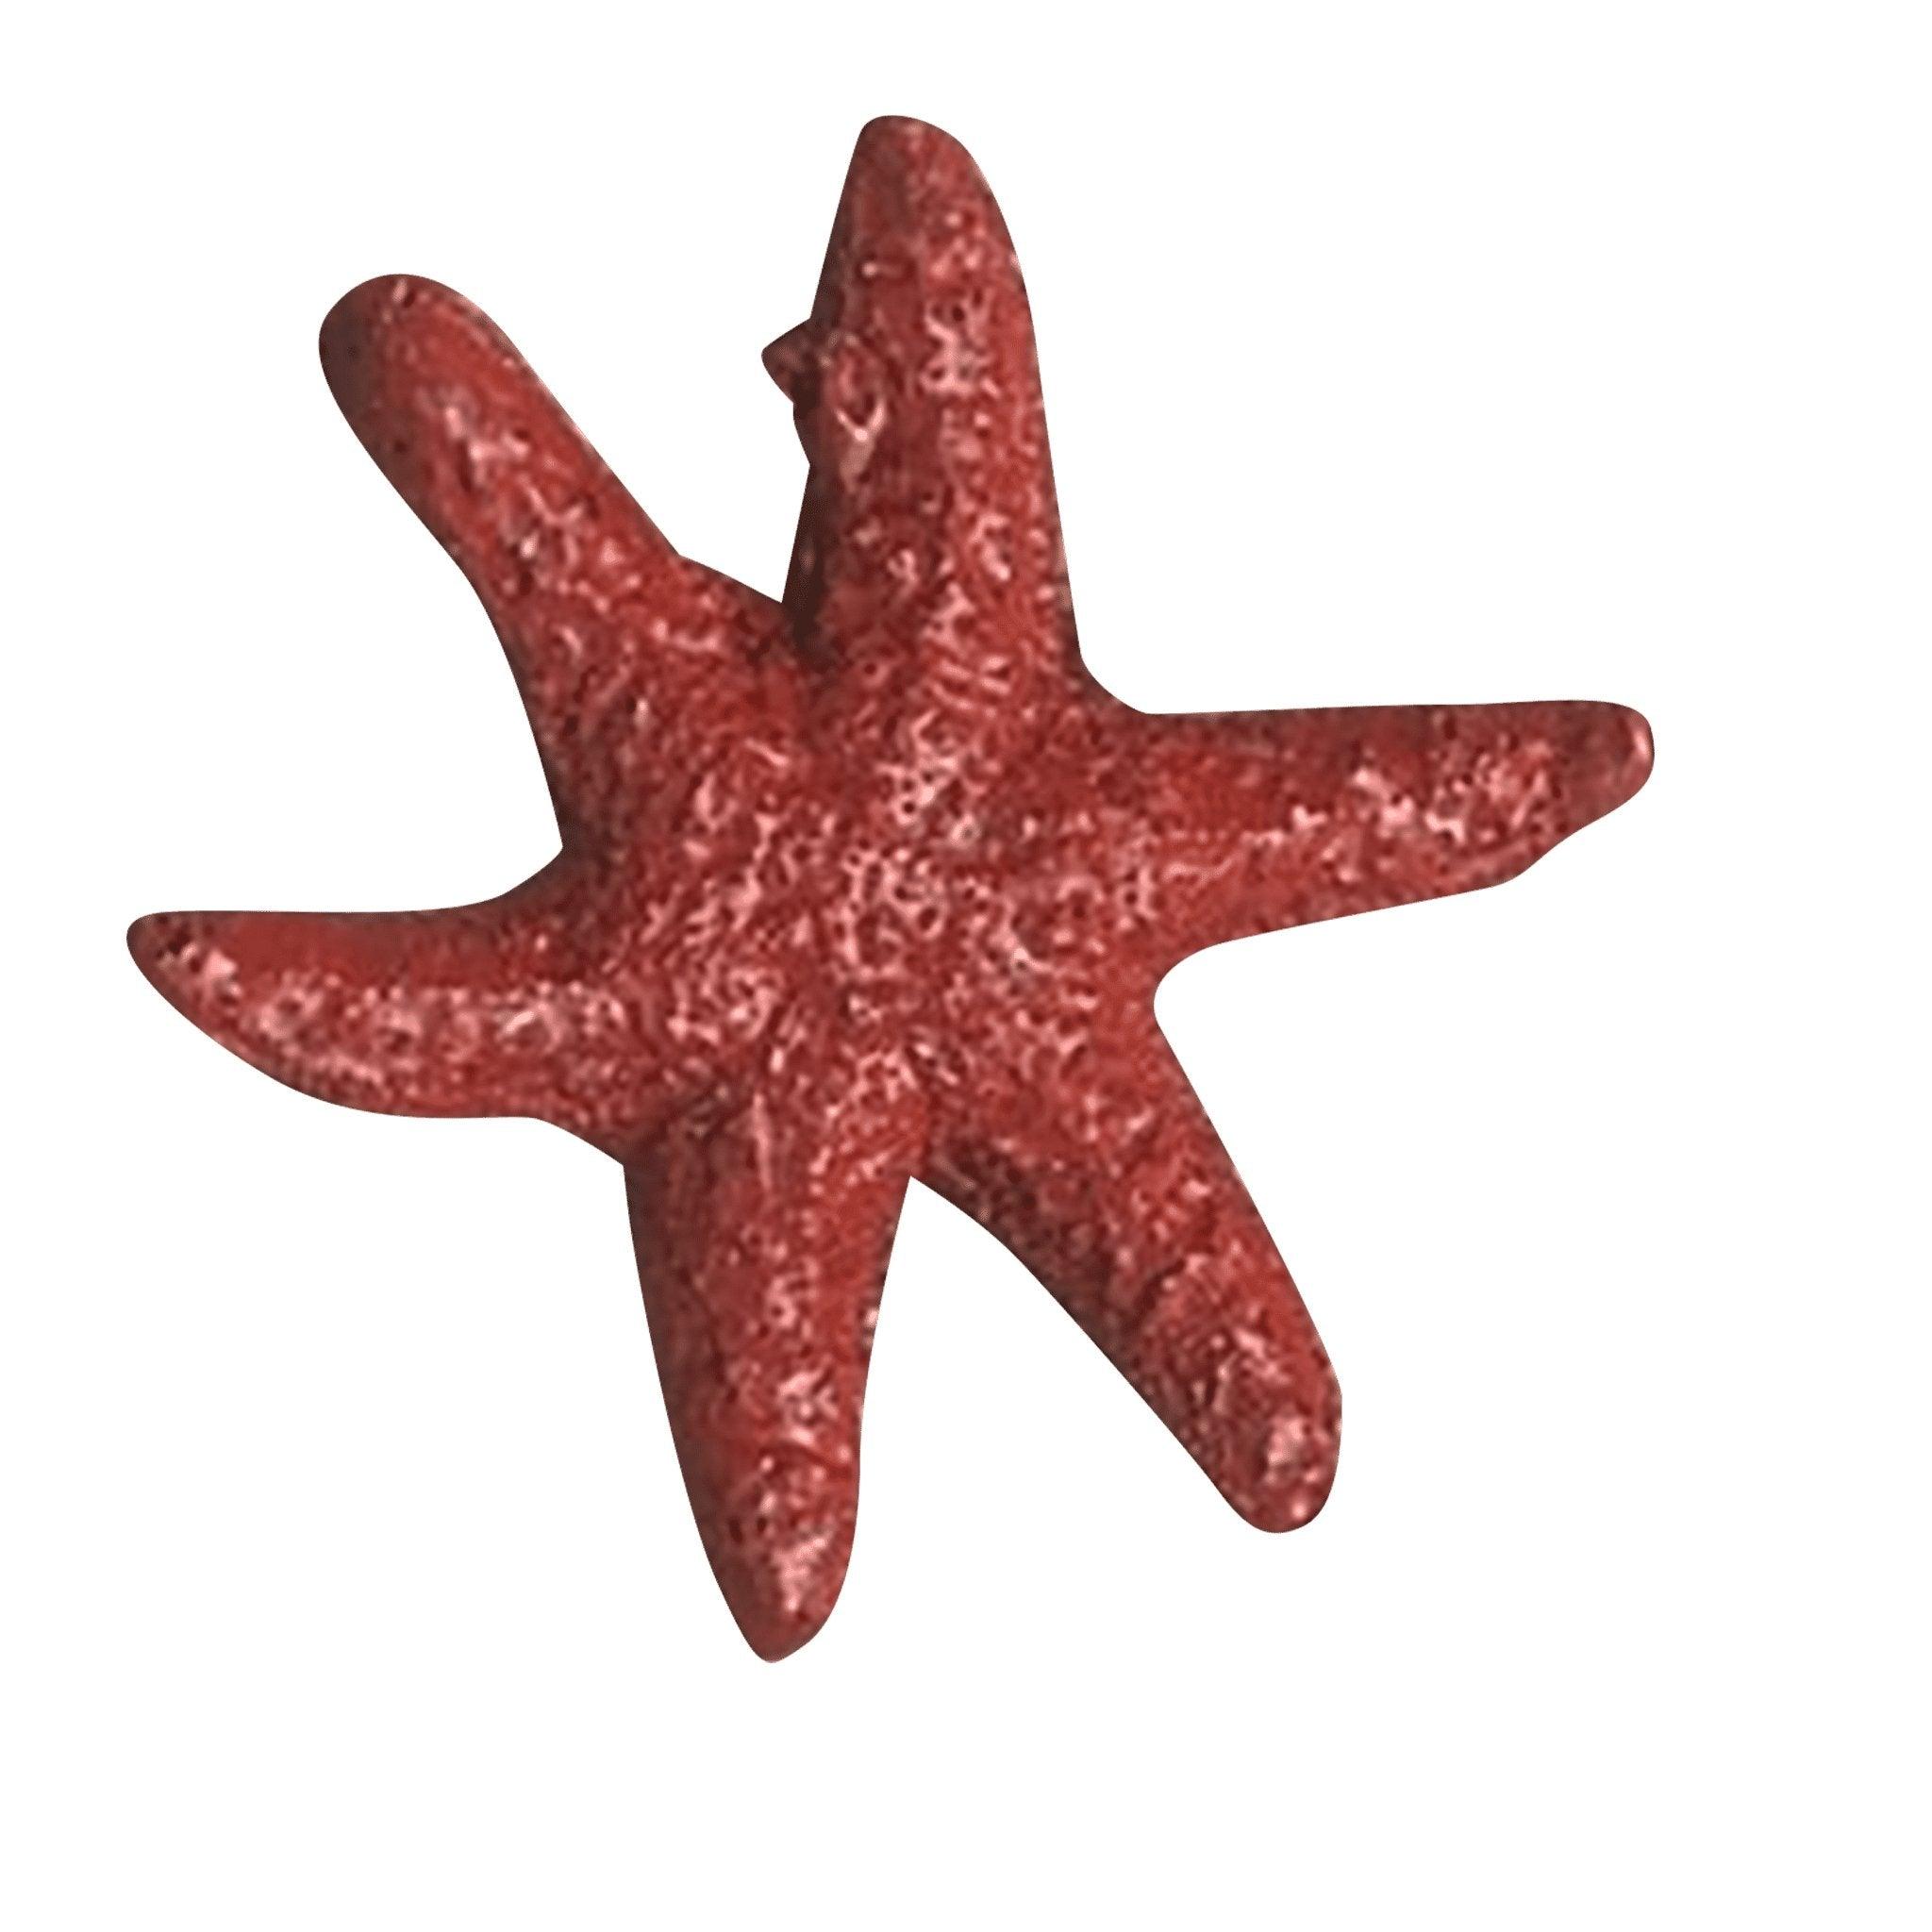 Flexible Starfish (small) - Matuska Taxidermy Supply Company